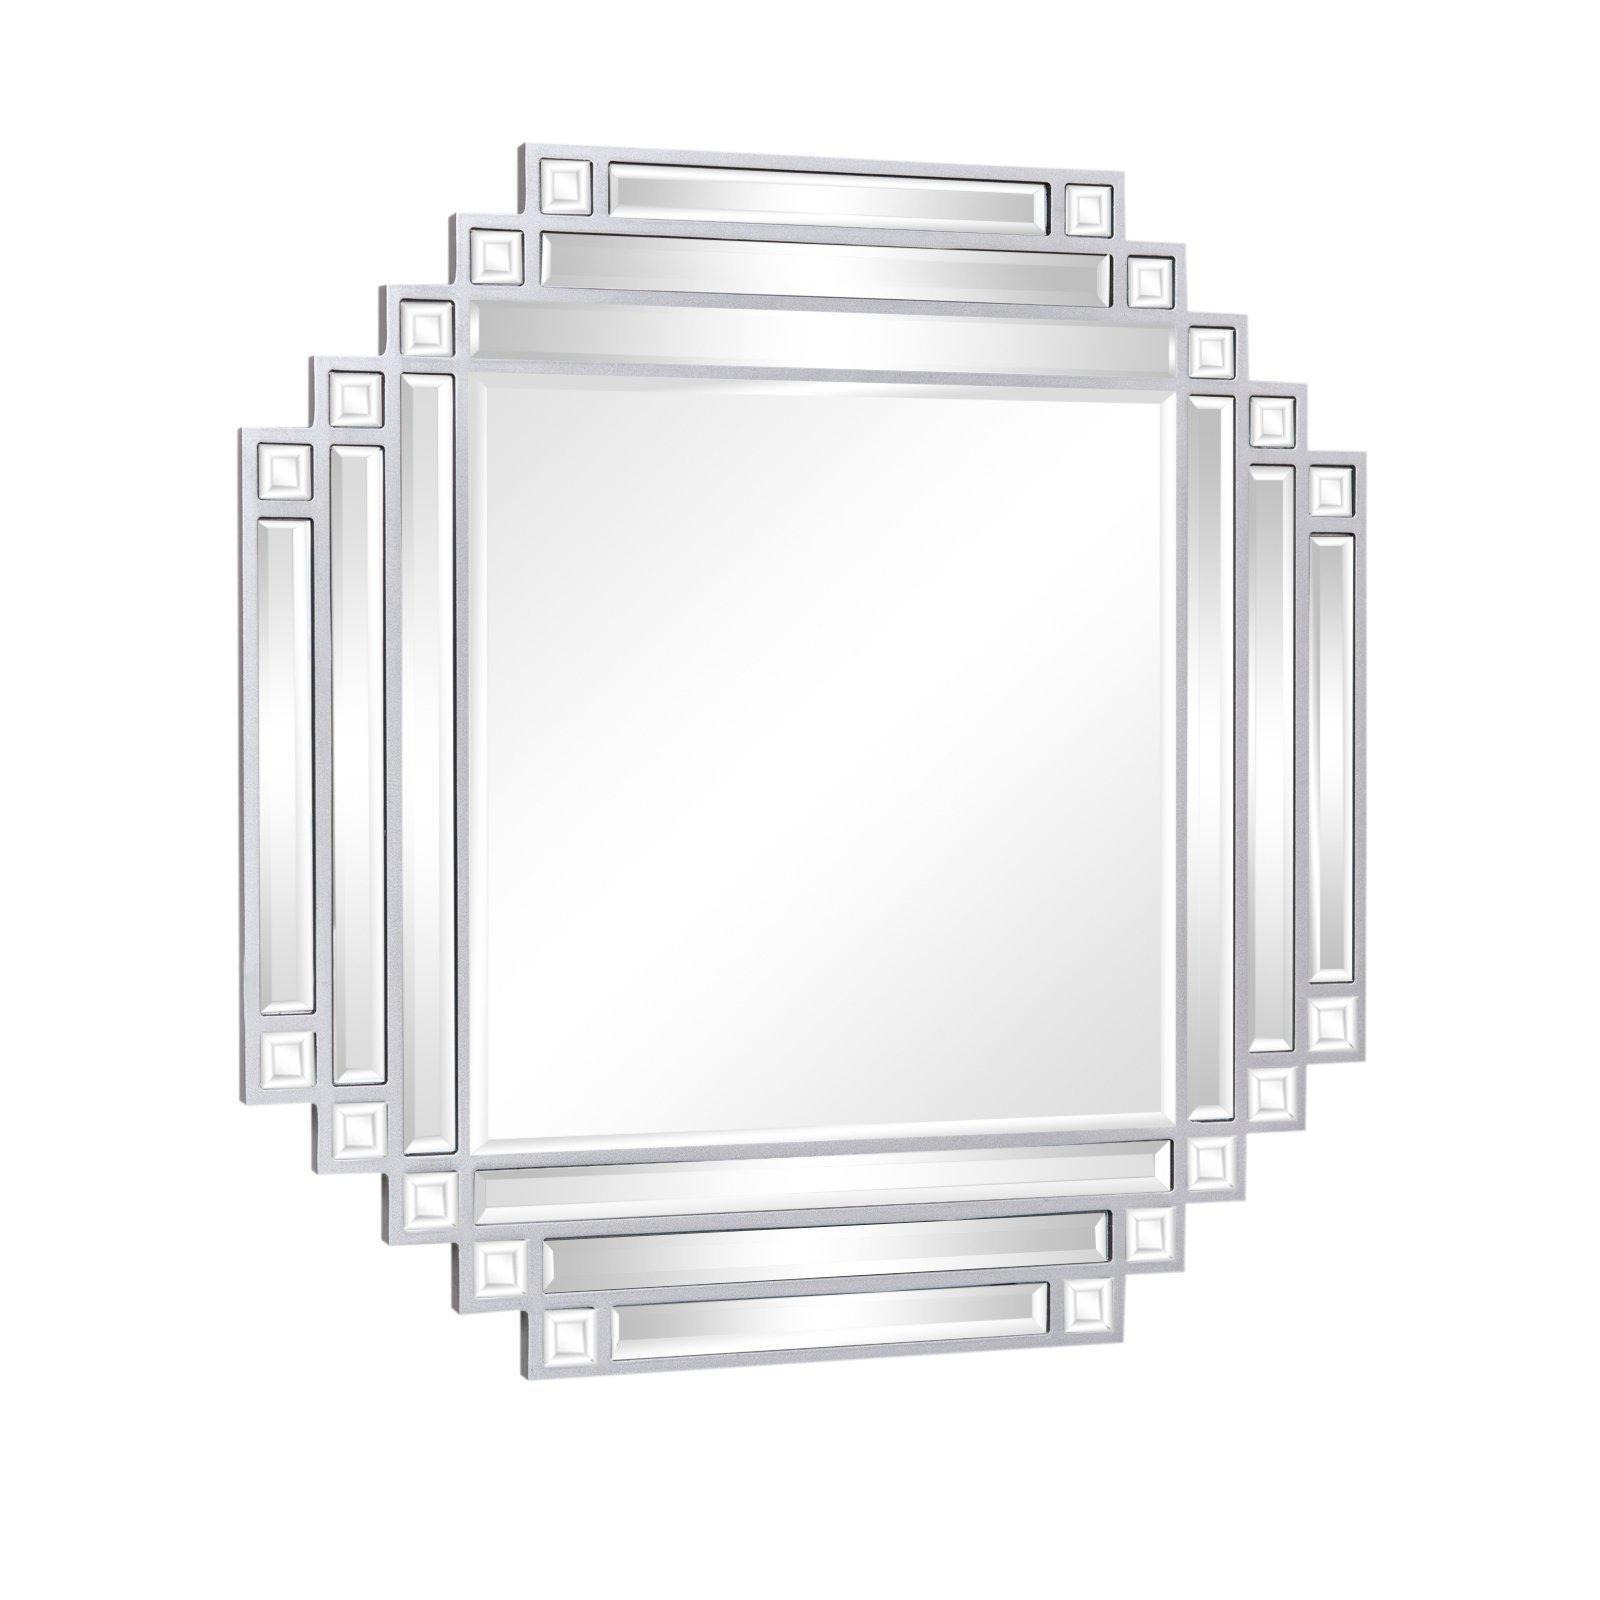 Square Silver Art Deco Fan Wall Mirror 55cm X 55cm - image 1